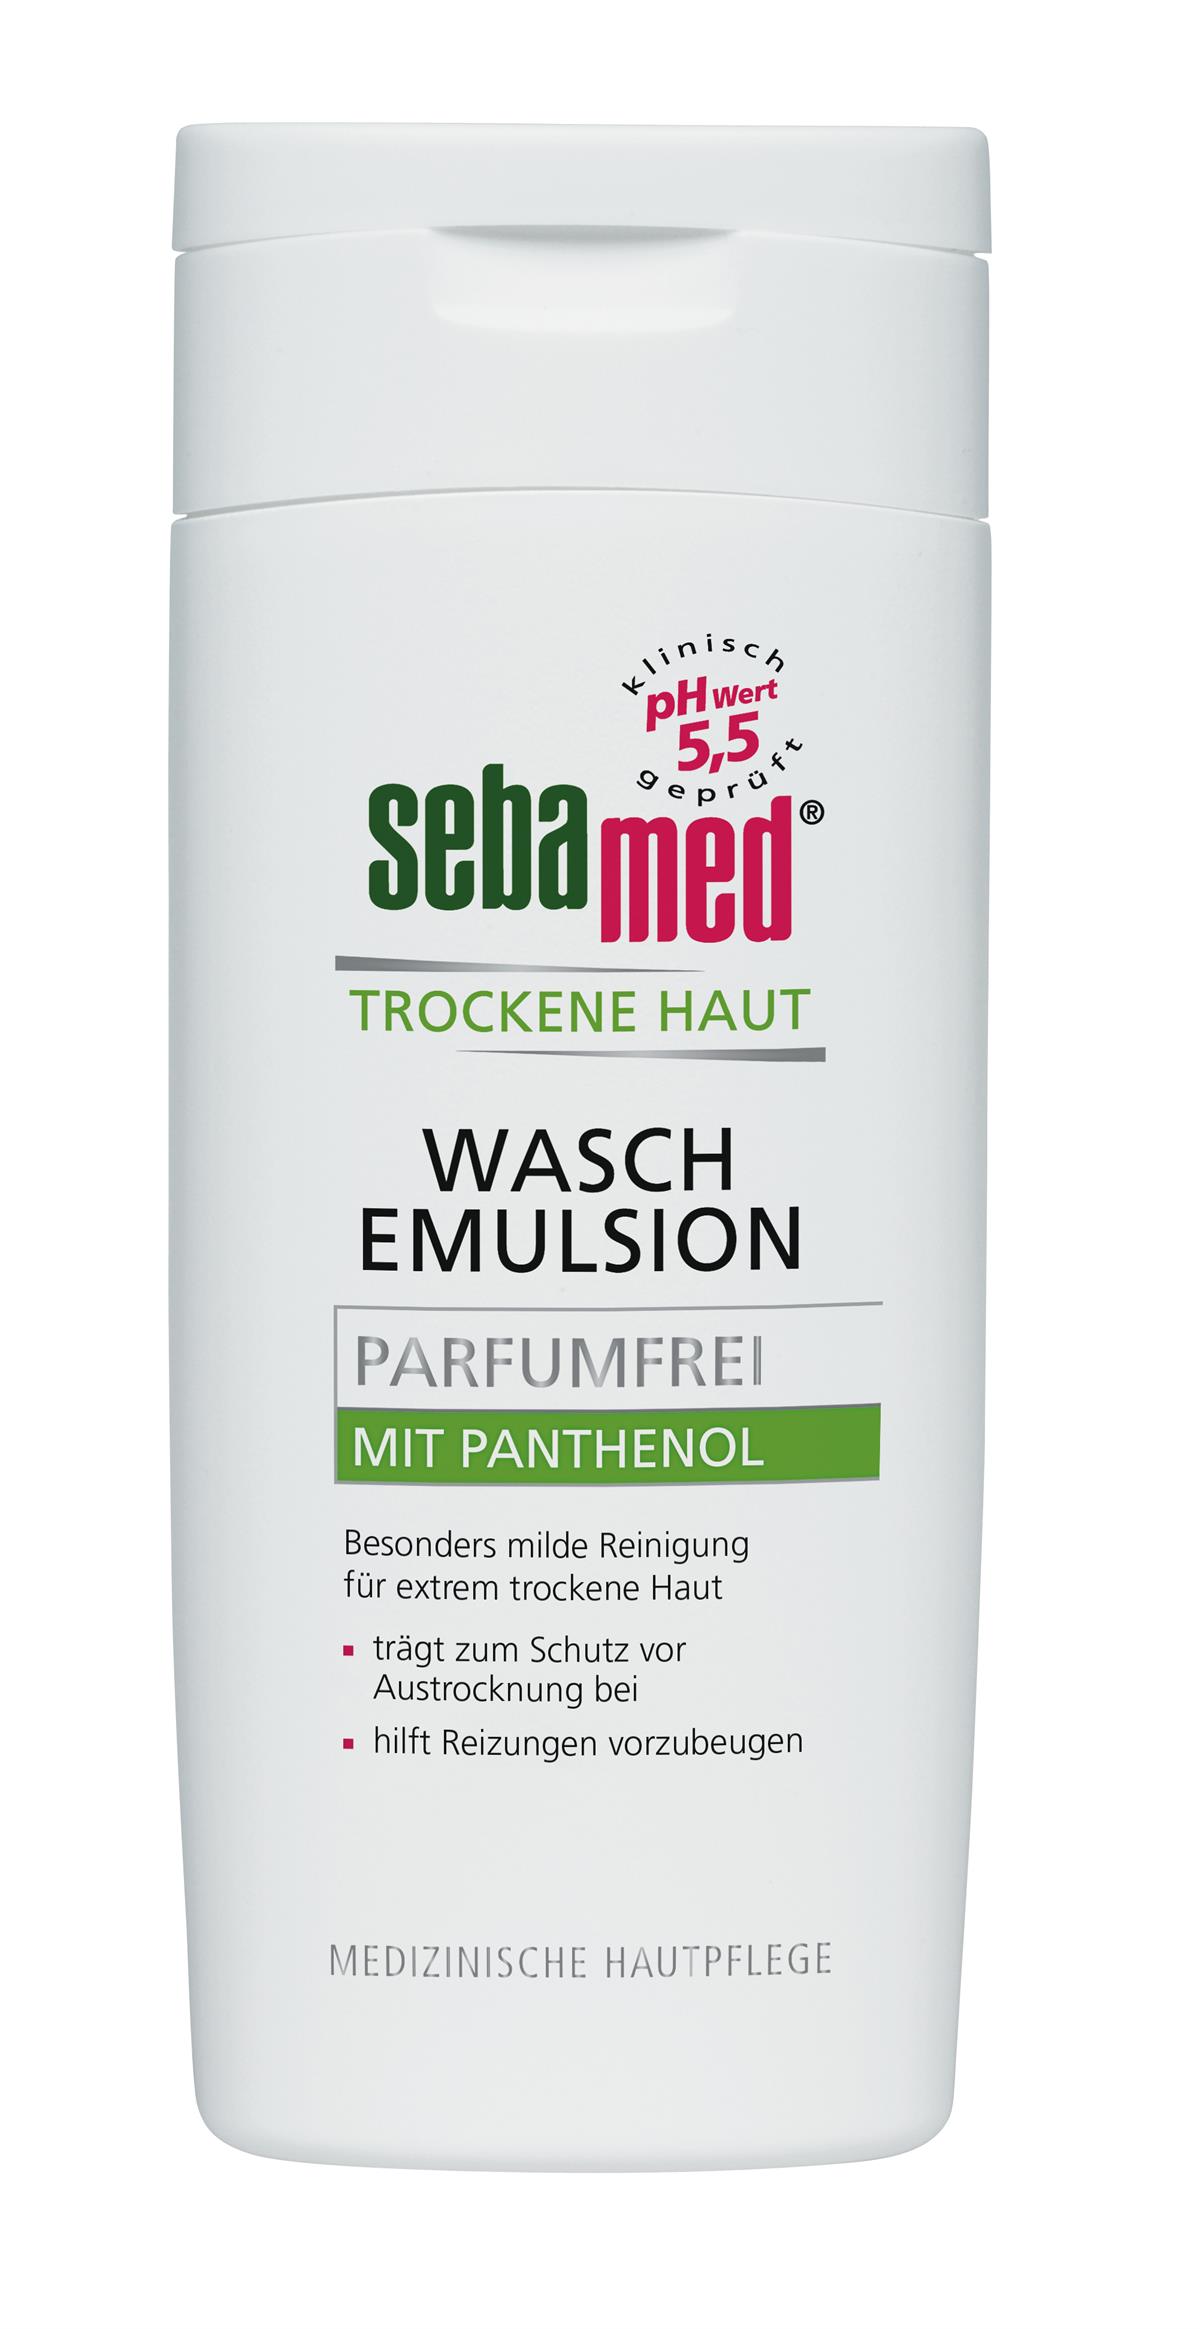 sebamed Trockene Haut Wasch Emulsion Parfumfrei (200 ml)